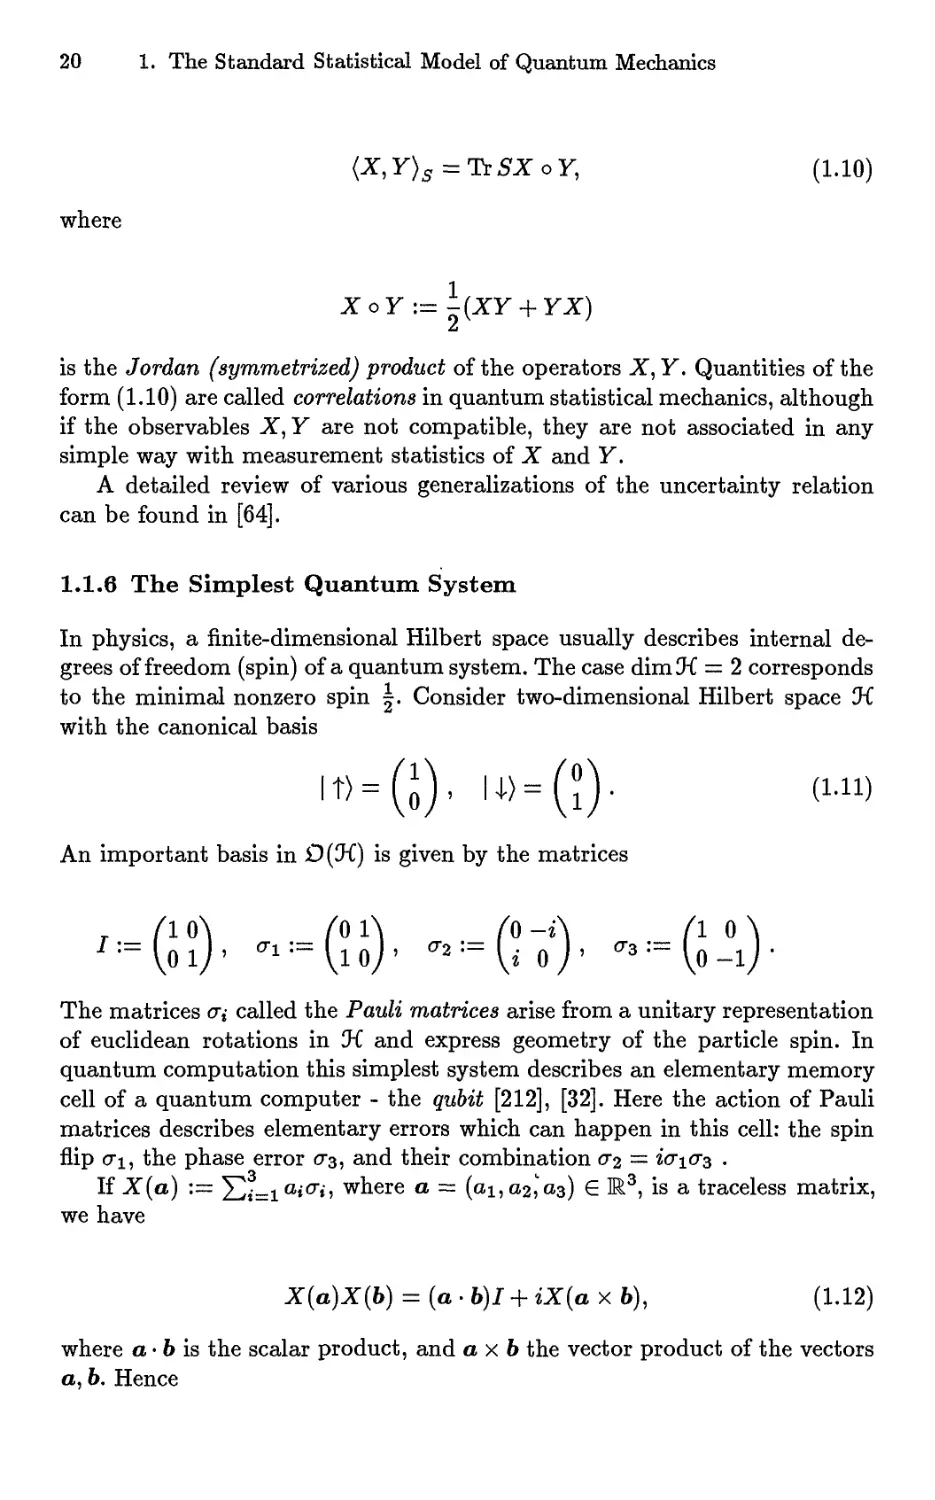 1.1.6 The Simplest Quantum System